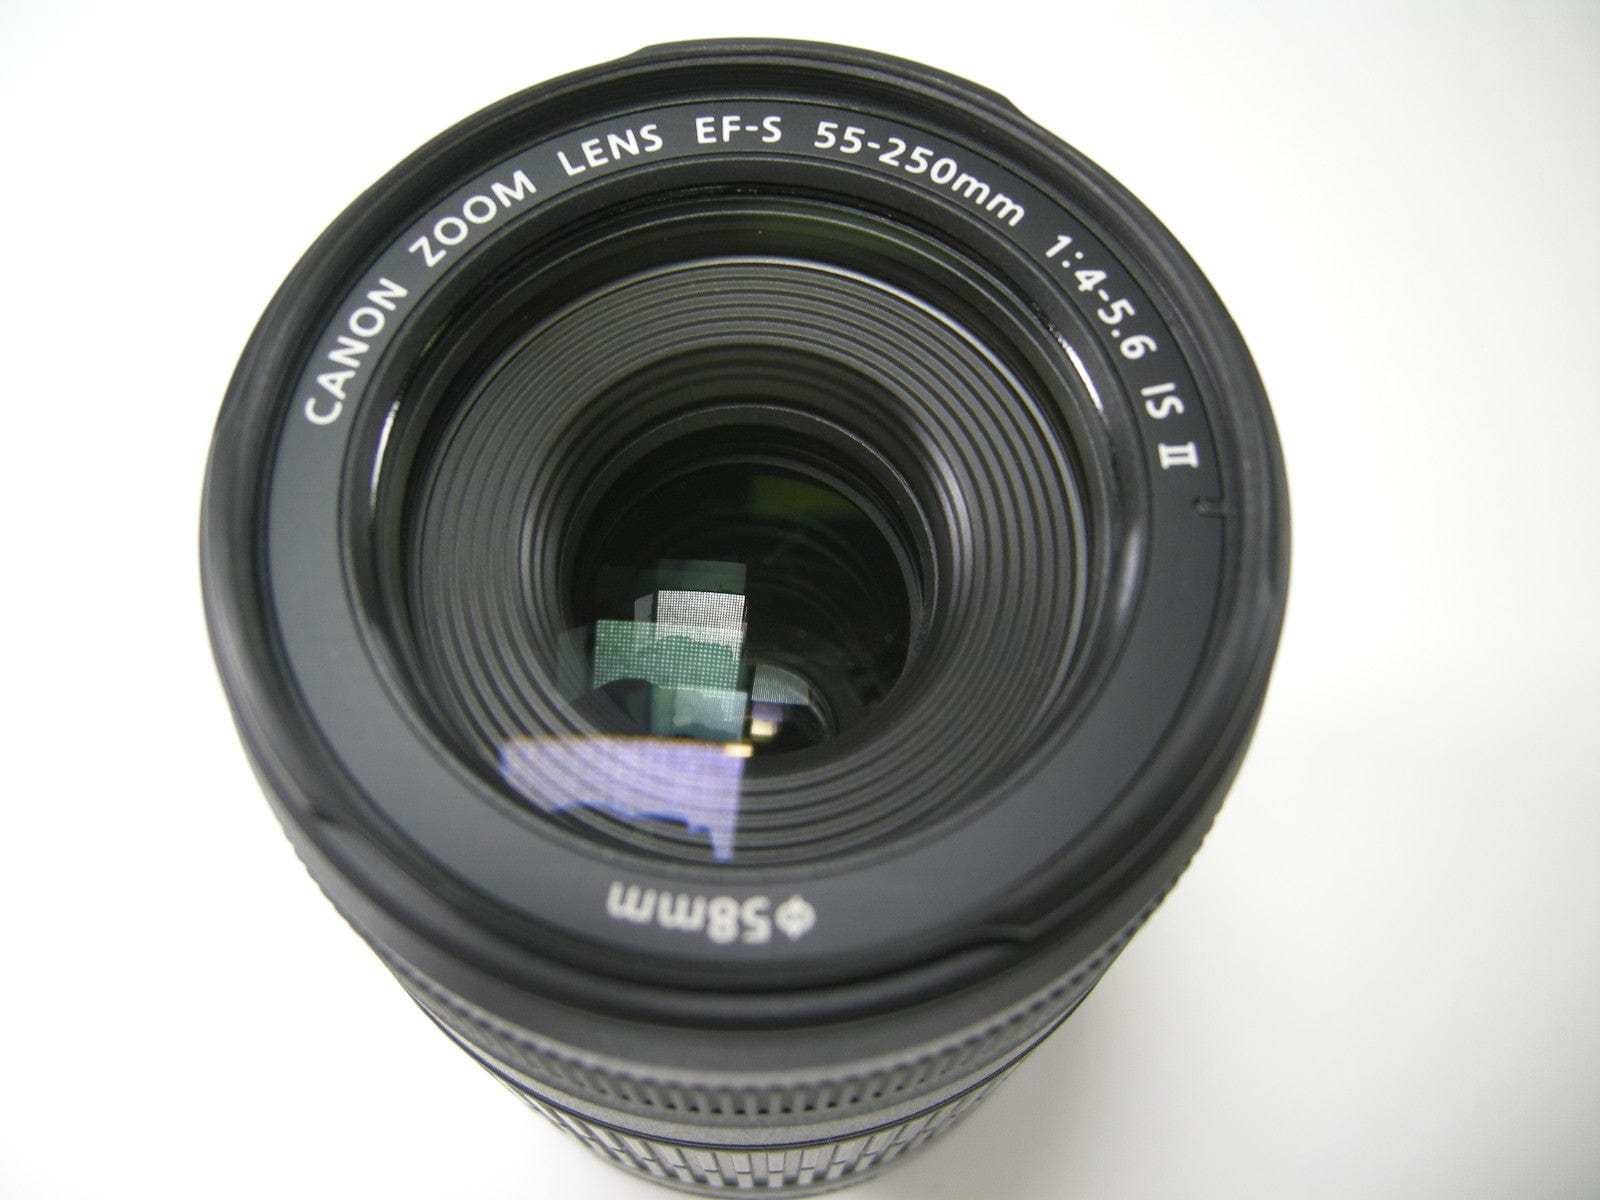 Canon EF-S 55-250mm f4-5.6 IS II Macro